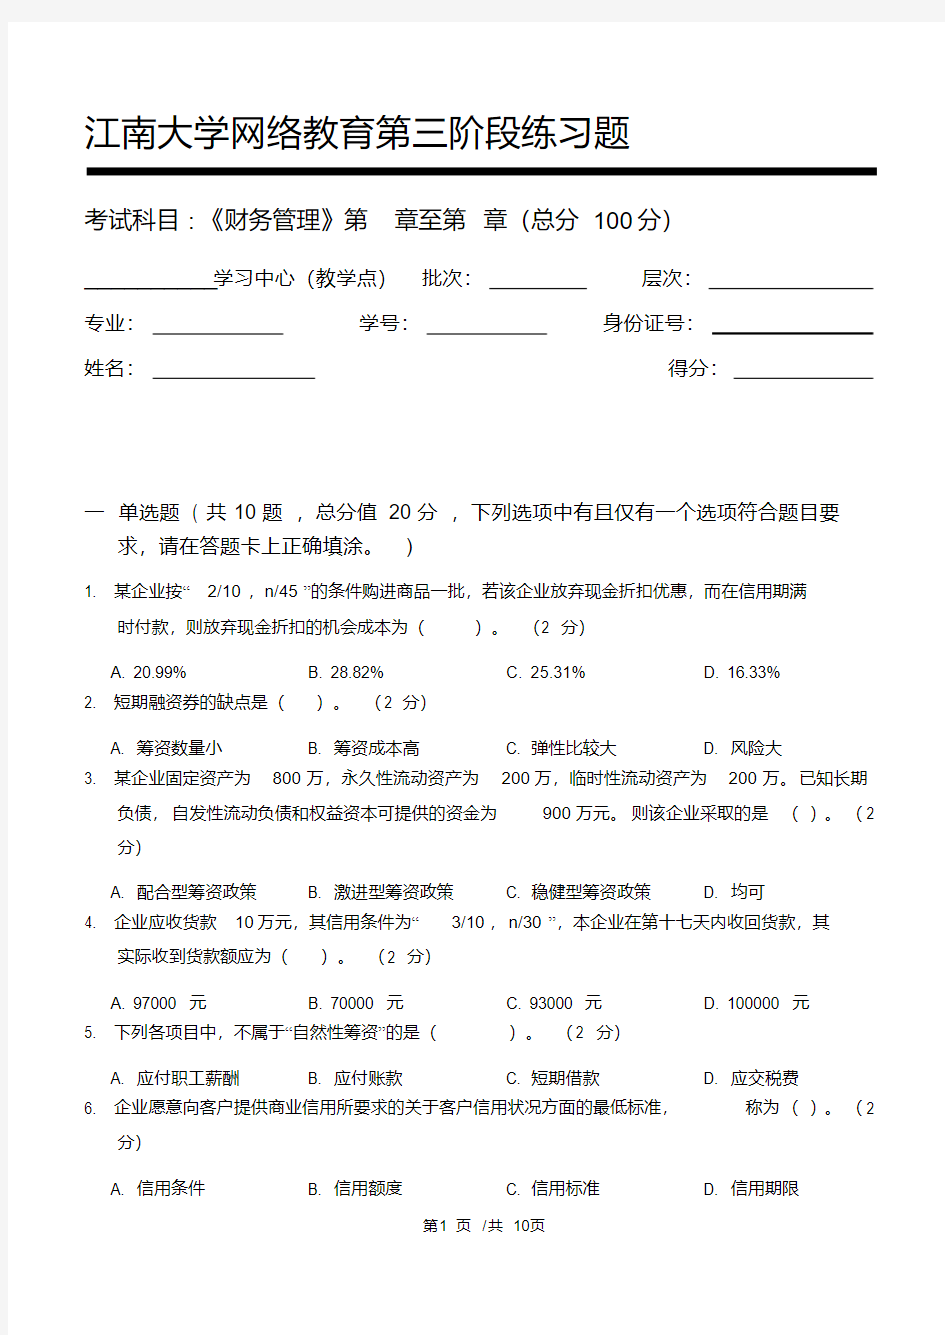 财务管理第3阶段练习题2020年上半年江南大学考试题库及答案答案在最后一页